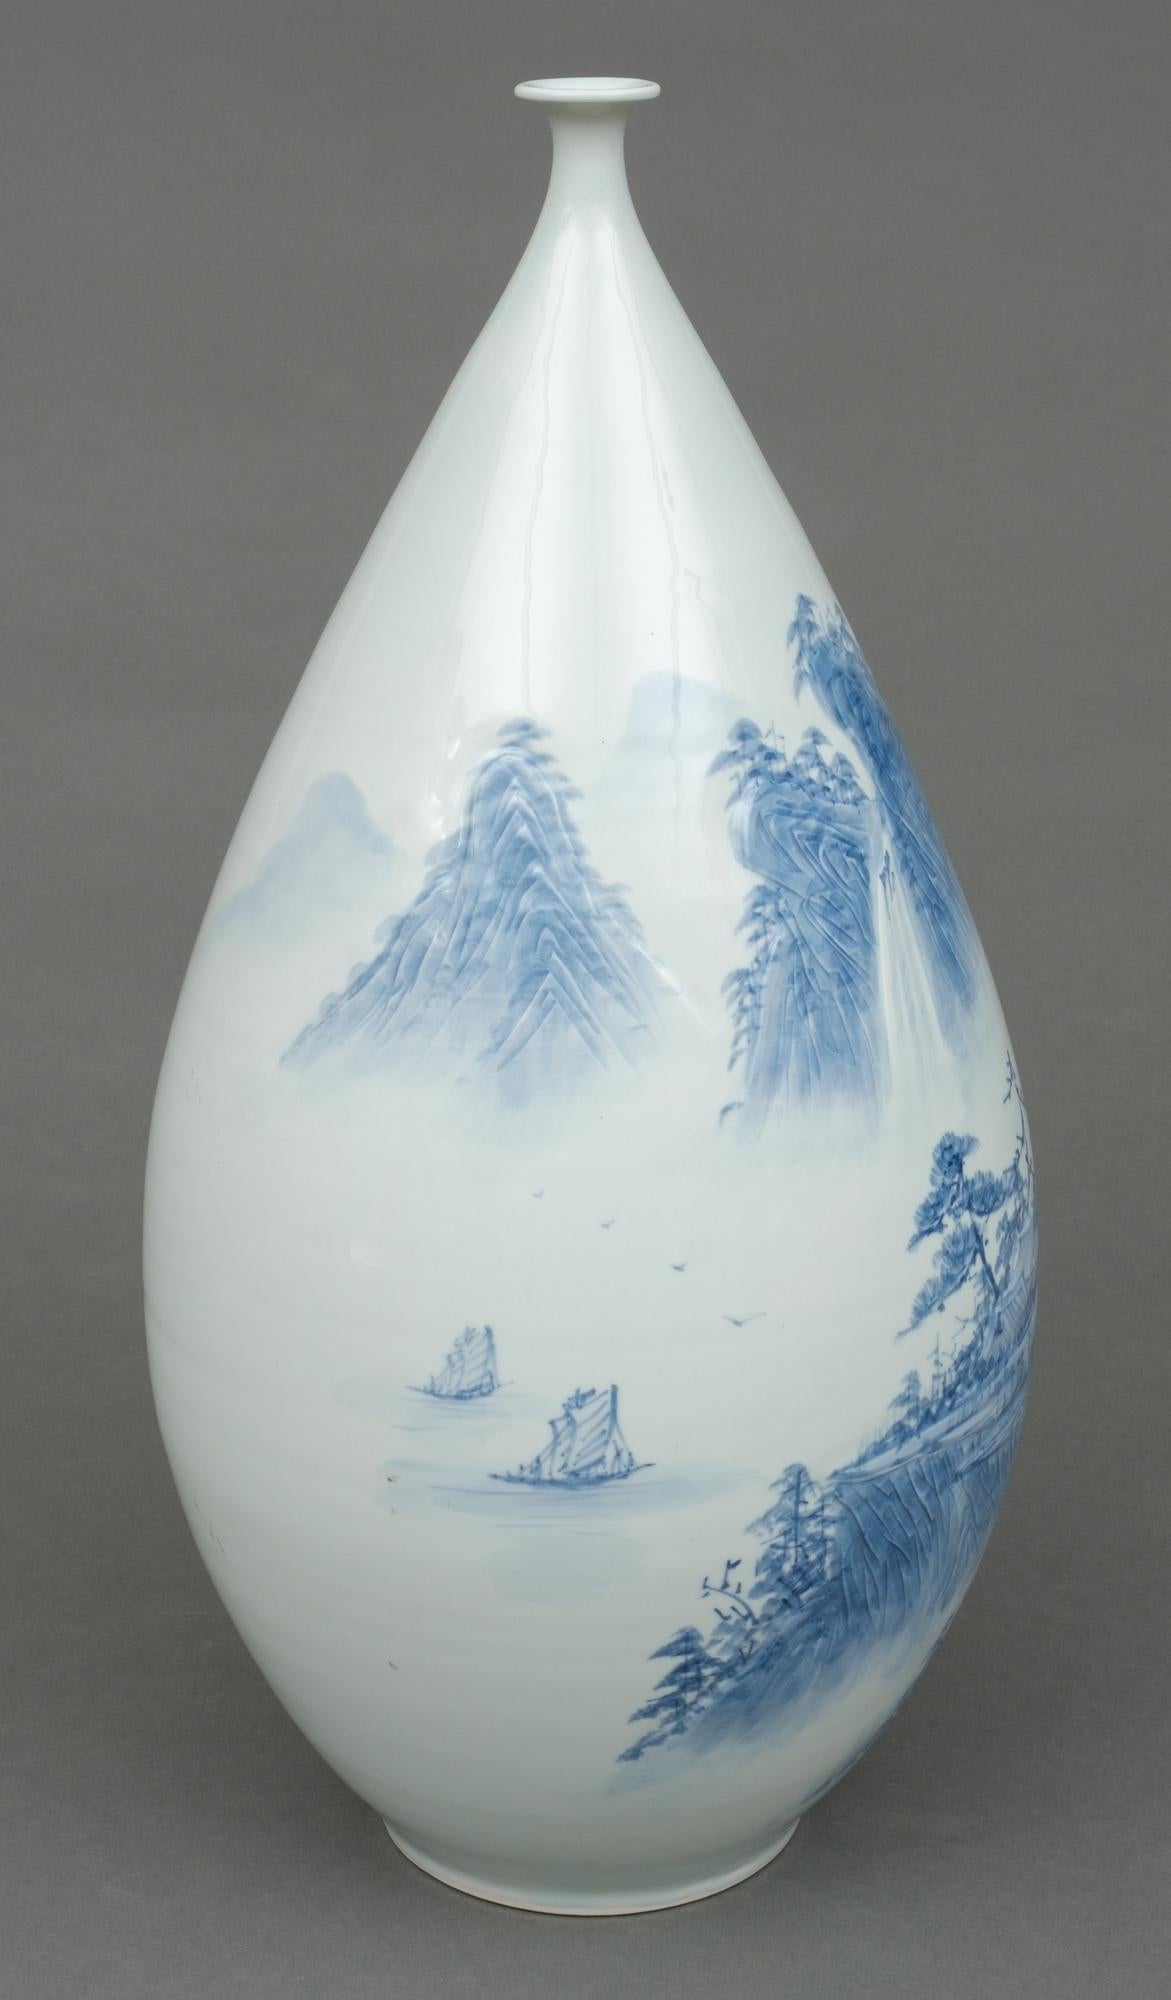 Moulé Grand vase ovoïde japonais en porcelaine avec paysage bleu et blanc, par Shigan 芝岩